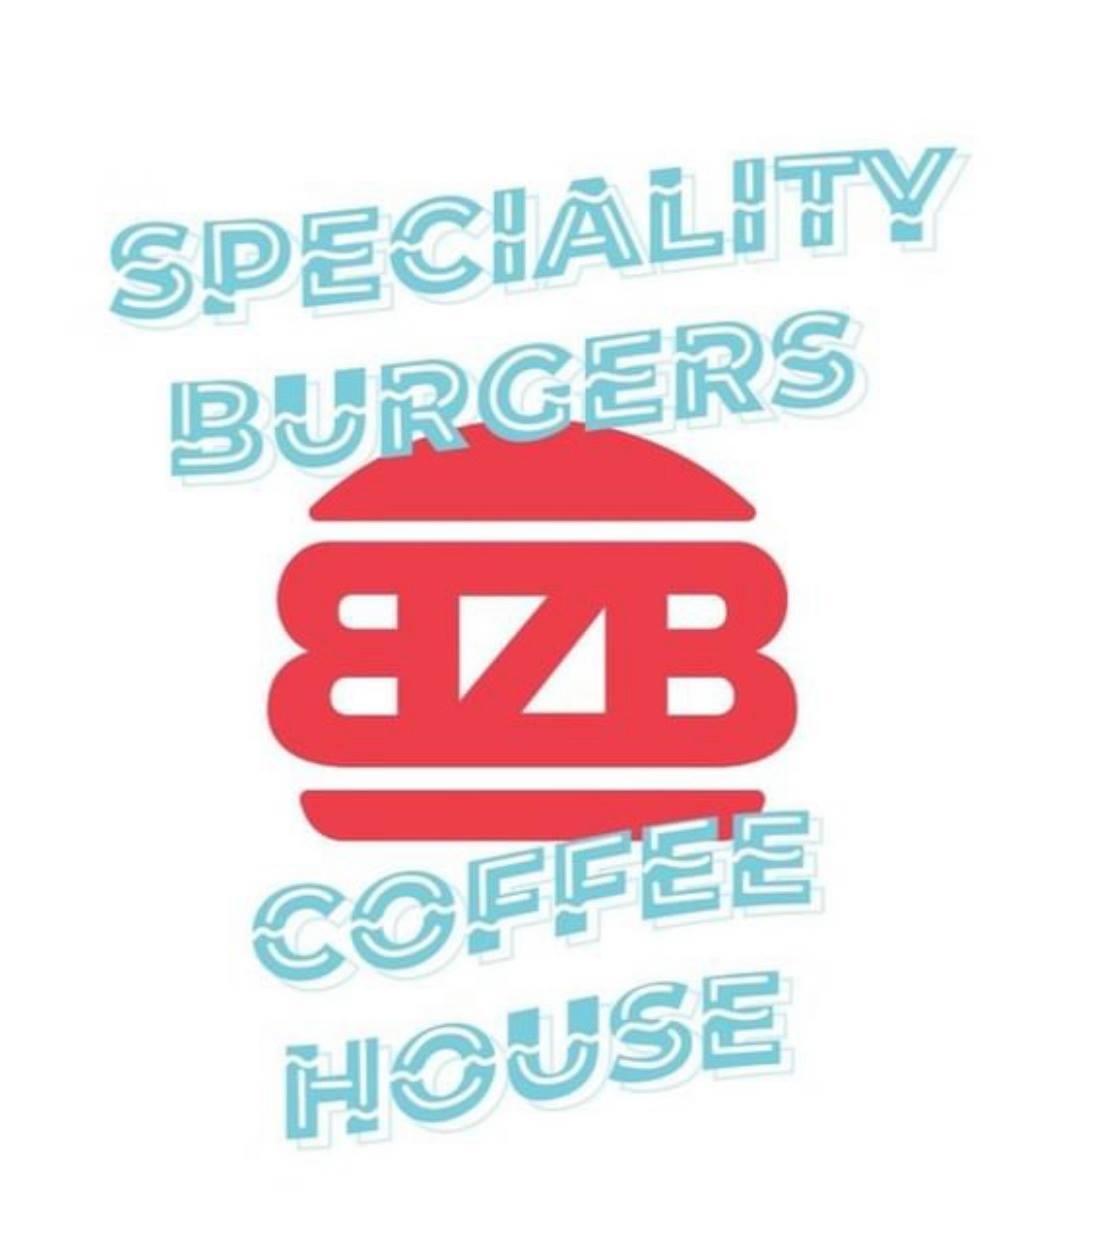 BZ Burger Belconnen | Unit C04/6 Grazier La, Belconnen ACT 2617, Australia | Phone: 0417 783 292